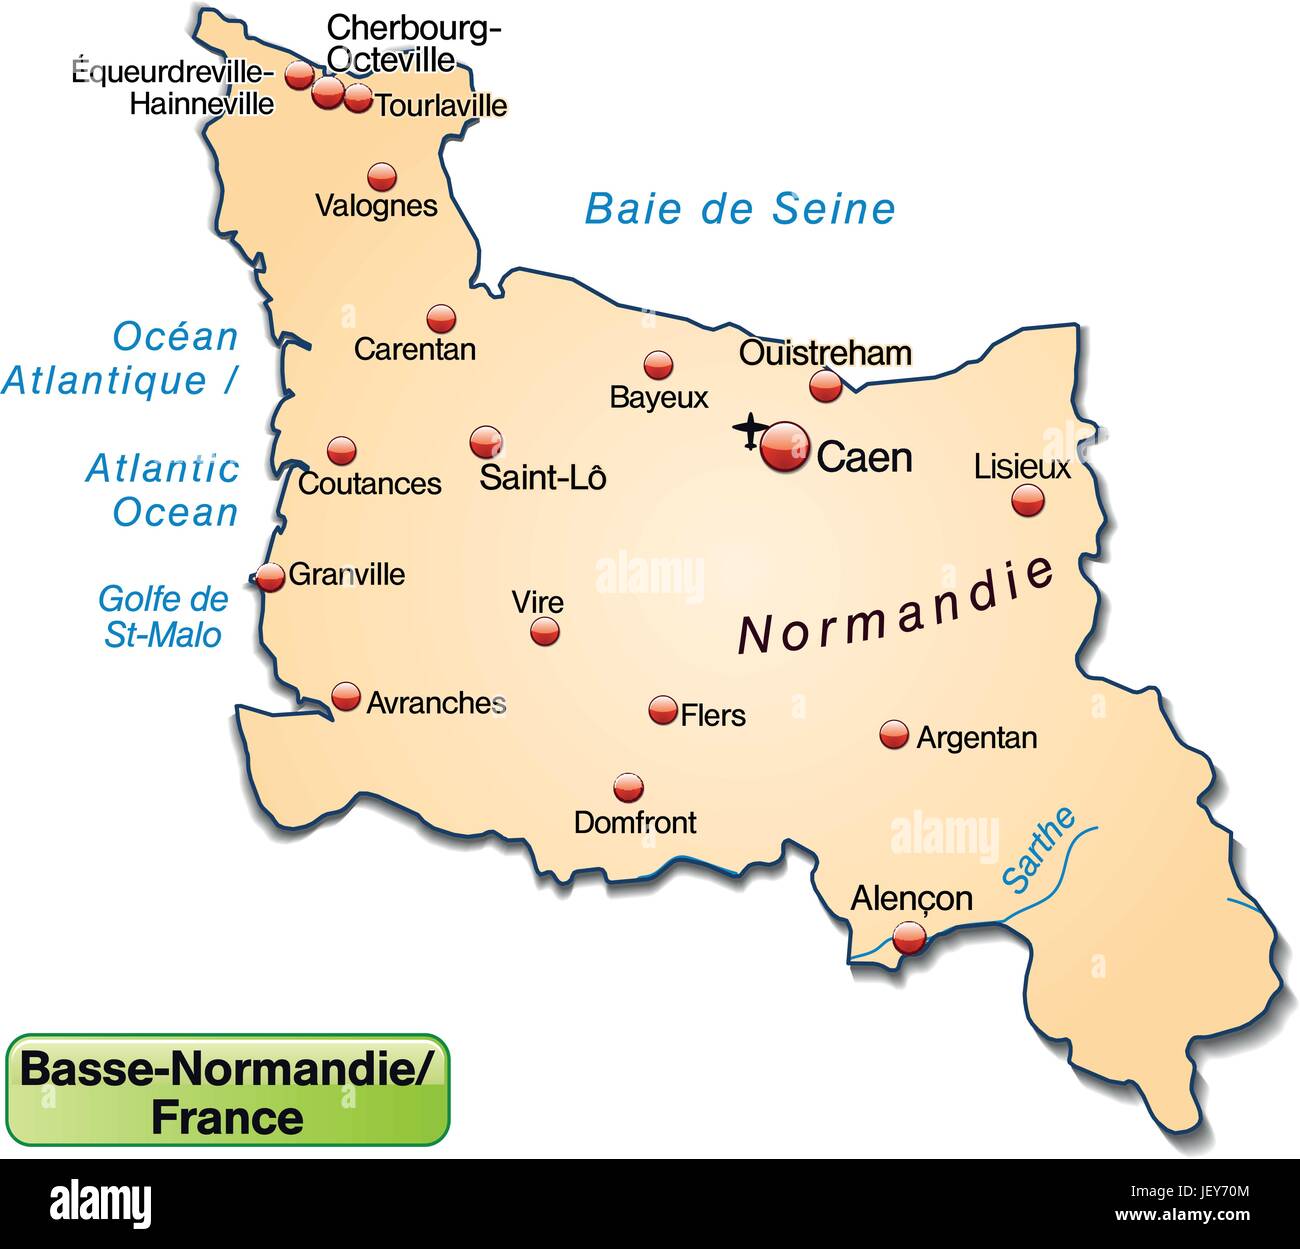 Normandie map Banque d'images vectorielles - Alamy